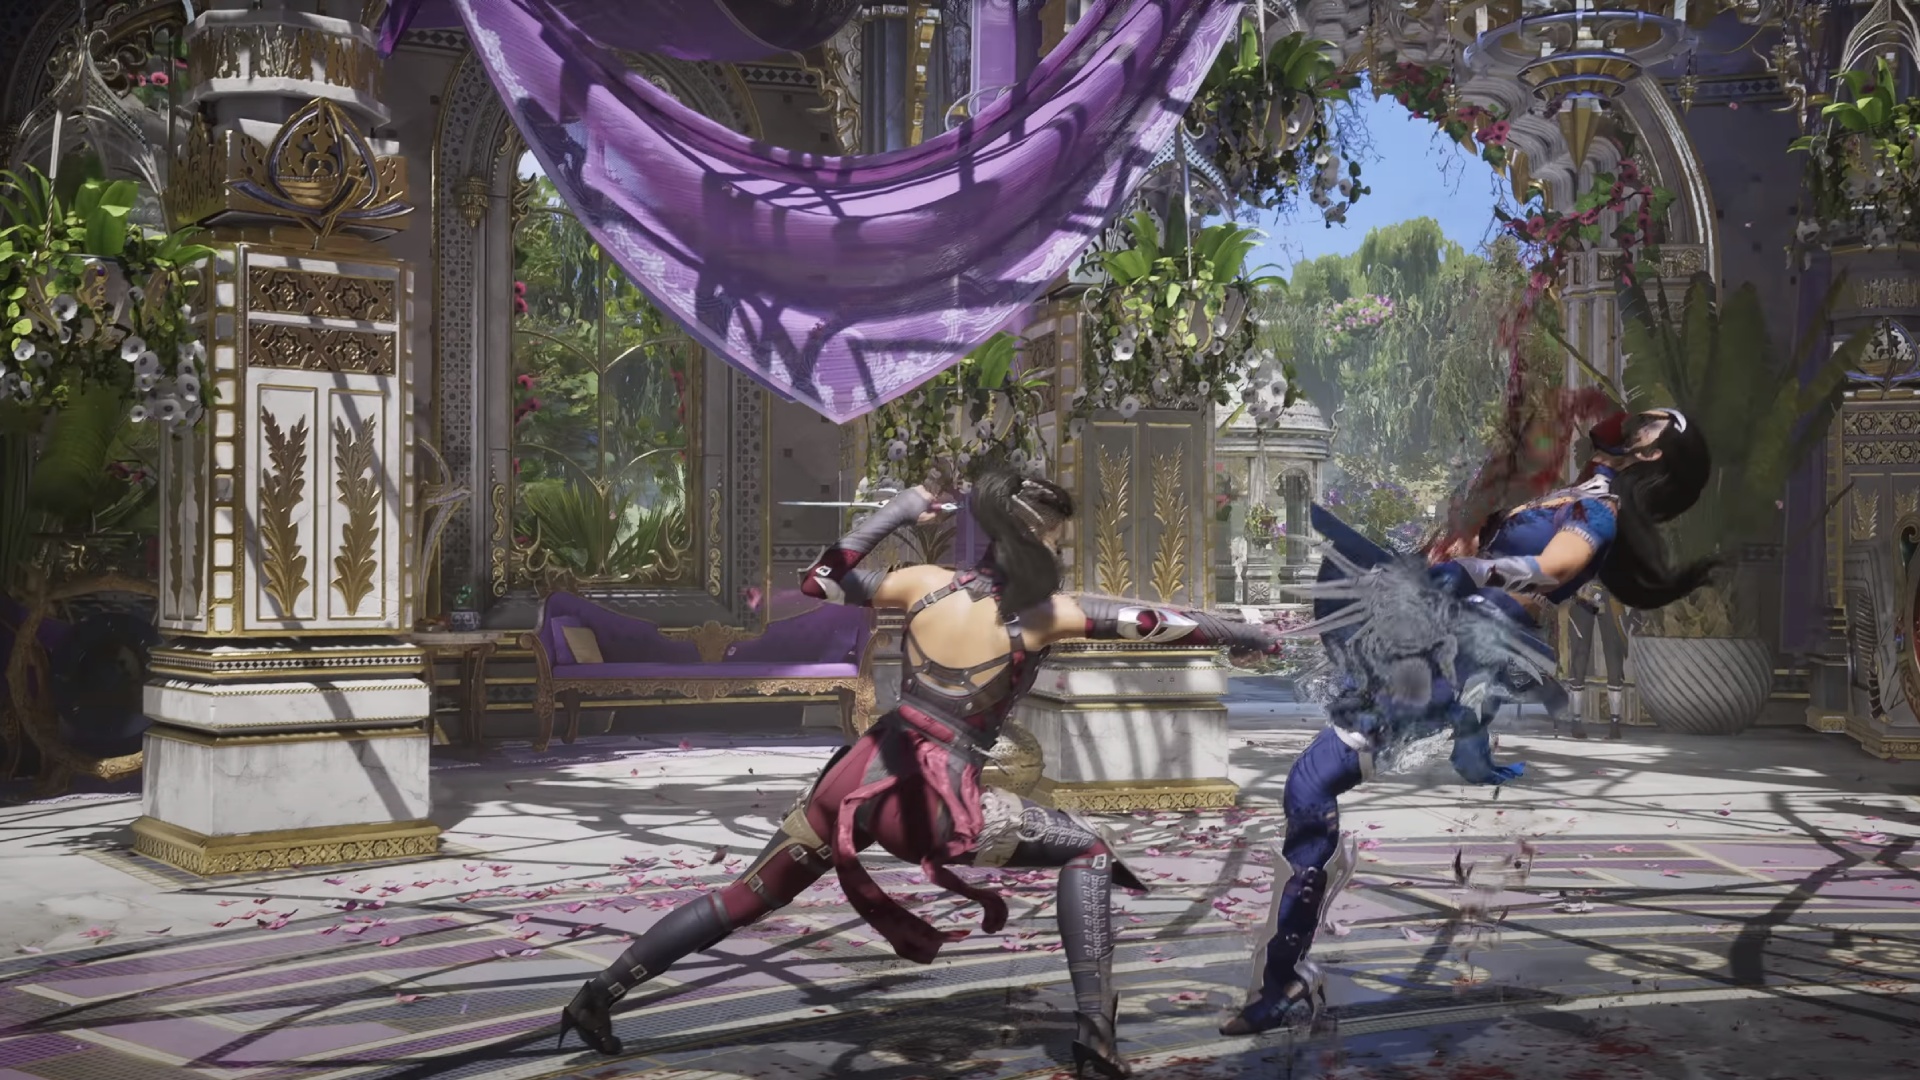 Mortal Kombat 1 characters: Mileena lunging at an enemy.